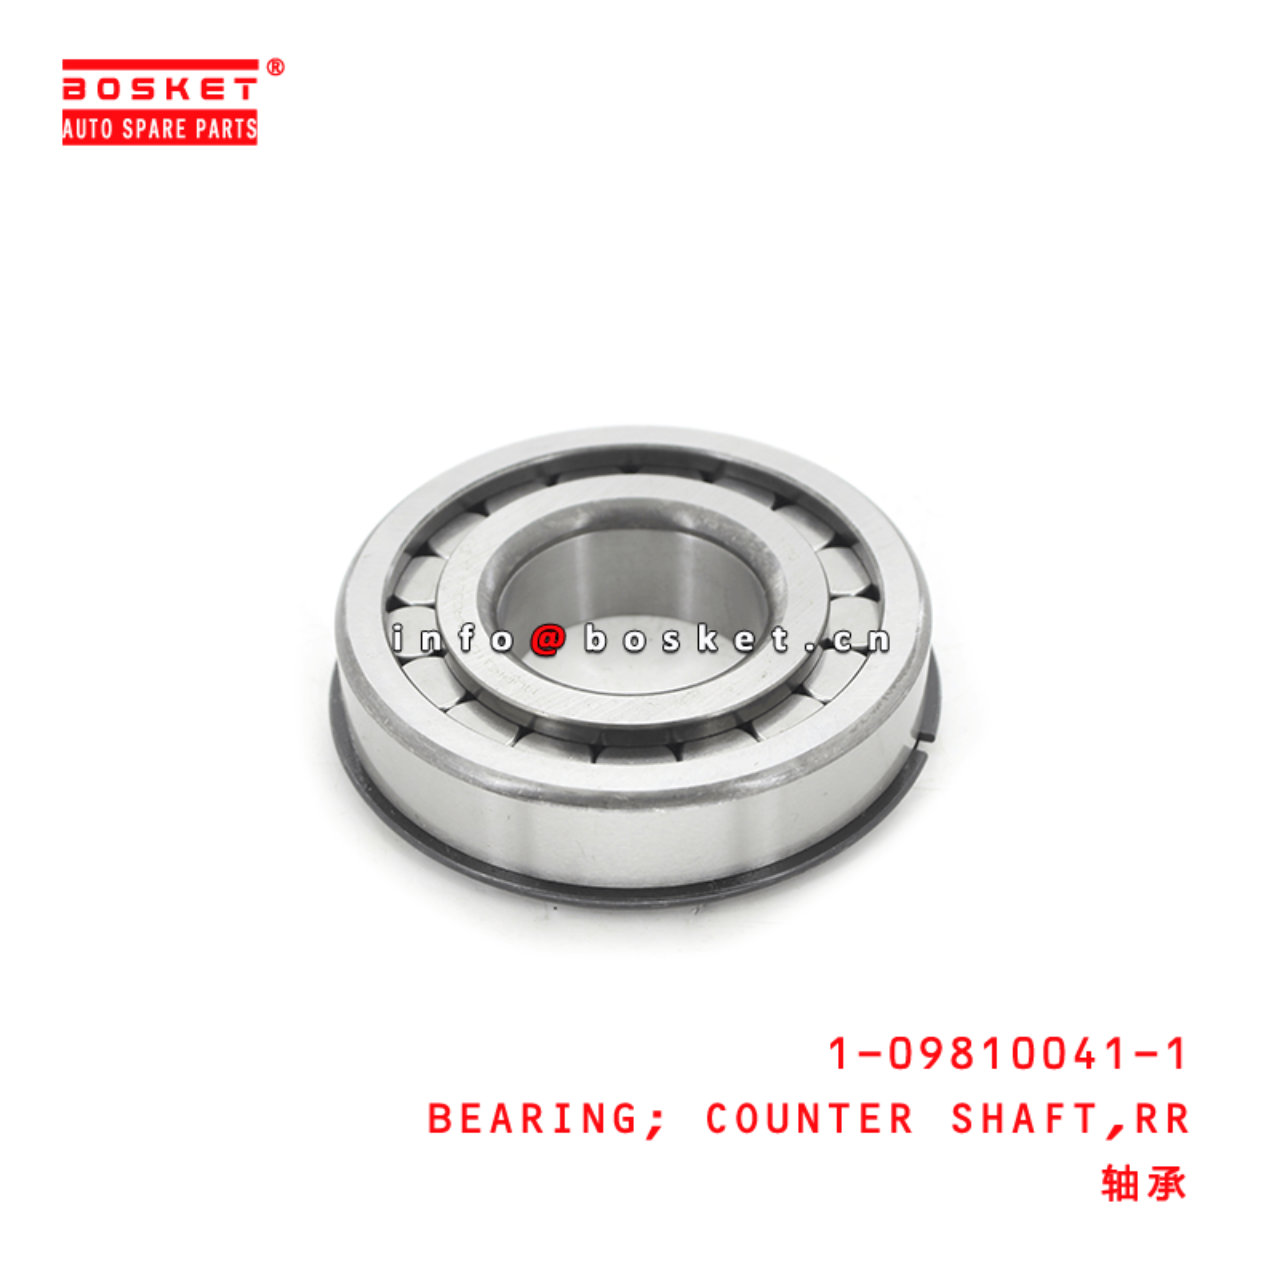 1-09810041-1 Rear Counter Shaft Bearing 1098100411 Suitable for ISUZU FTR FSR 4HK1 6HK1